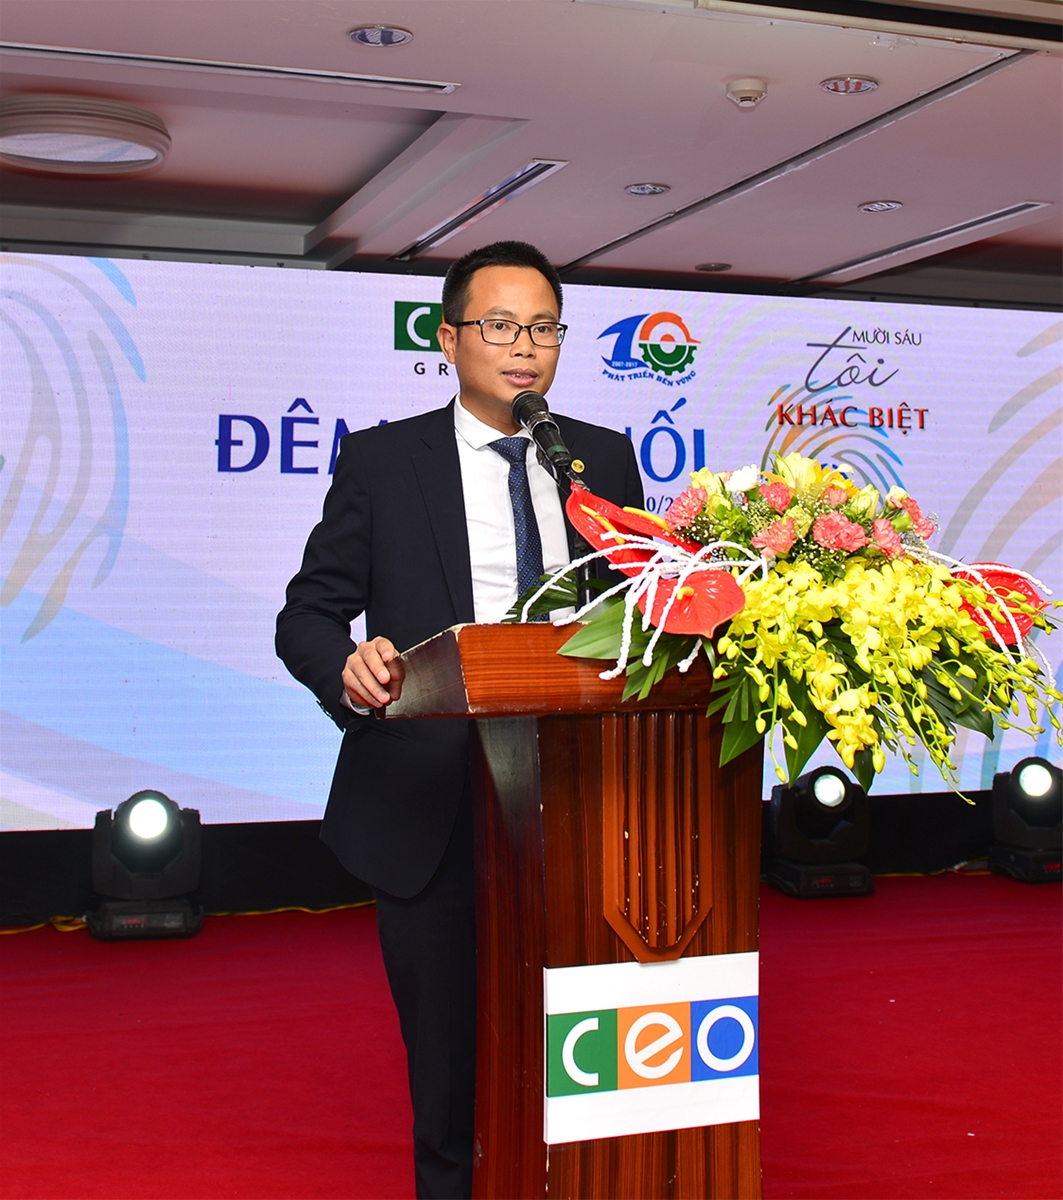 Ông Trần Trung Kết – Giám đốc CEO Xây dựng phát biểu tại buổi lễ